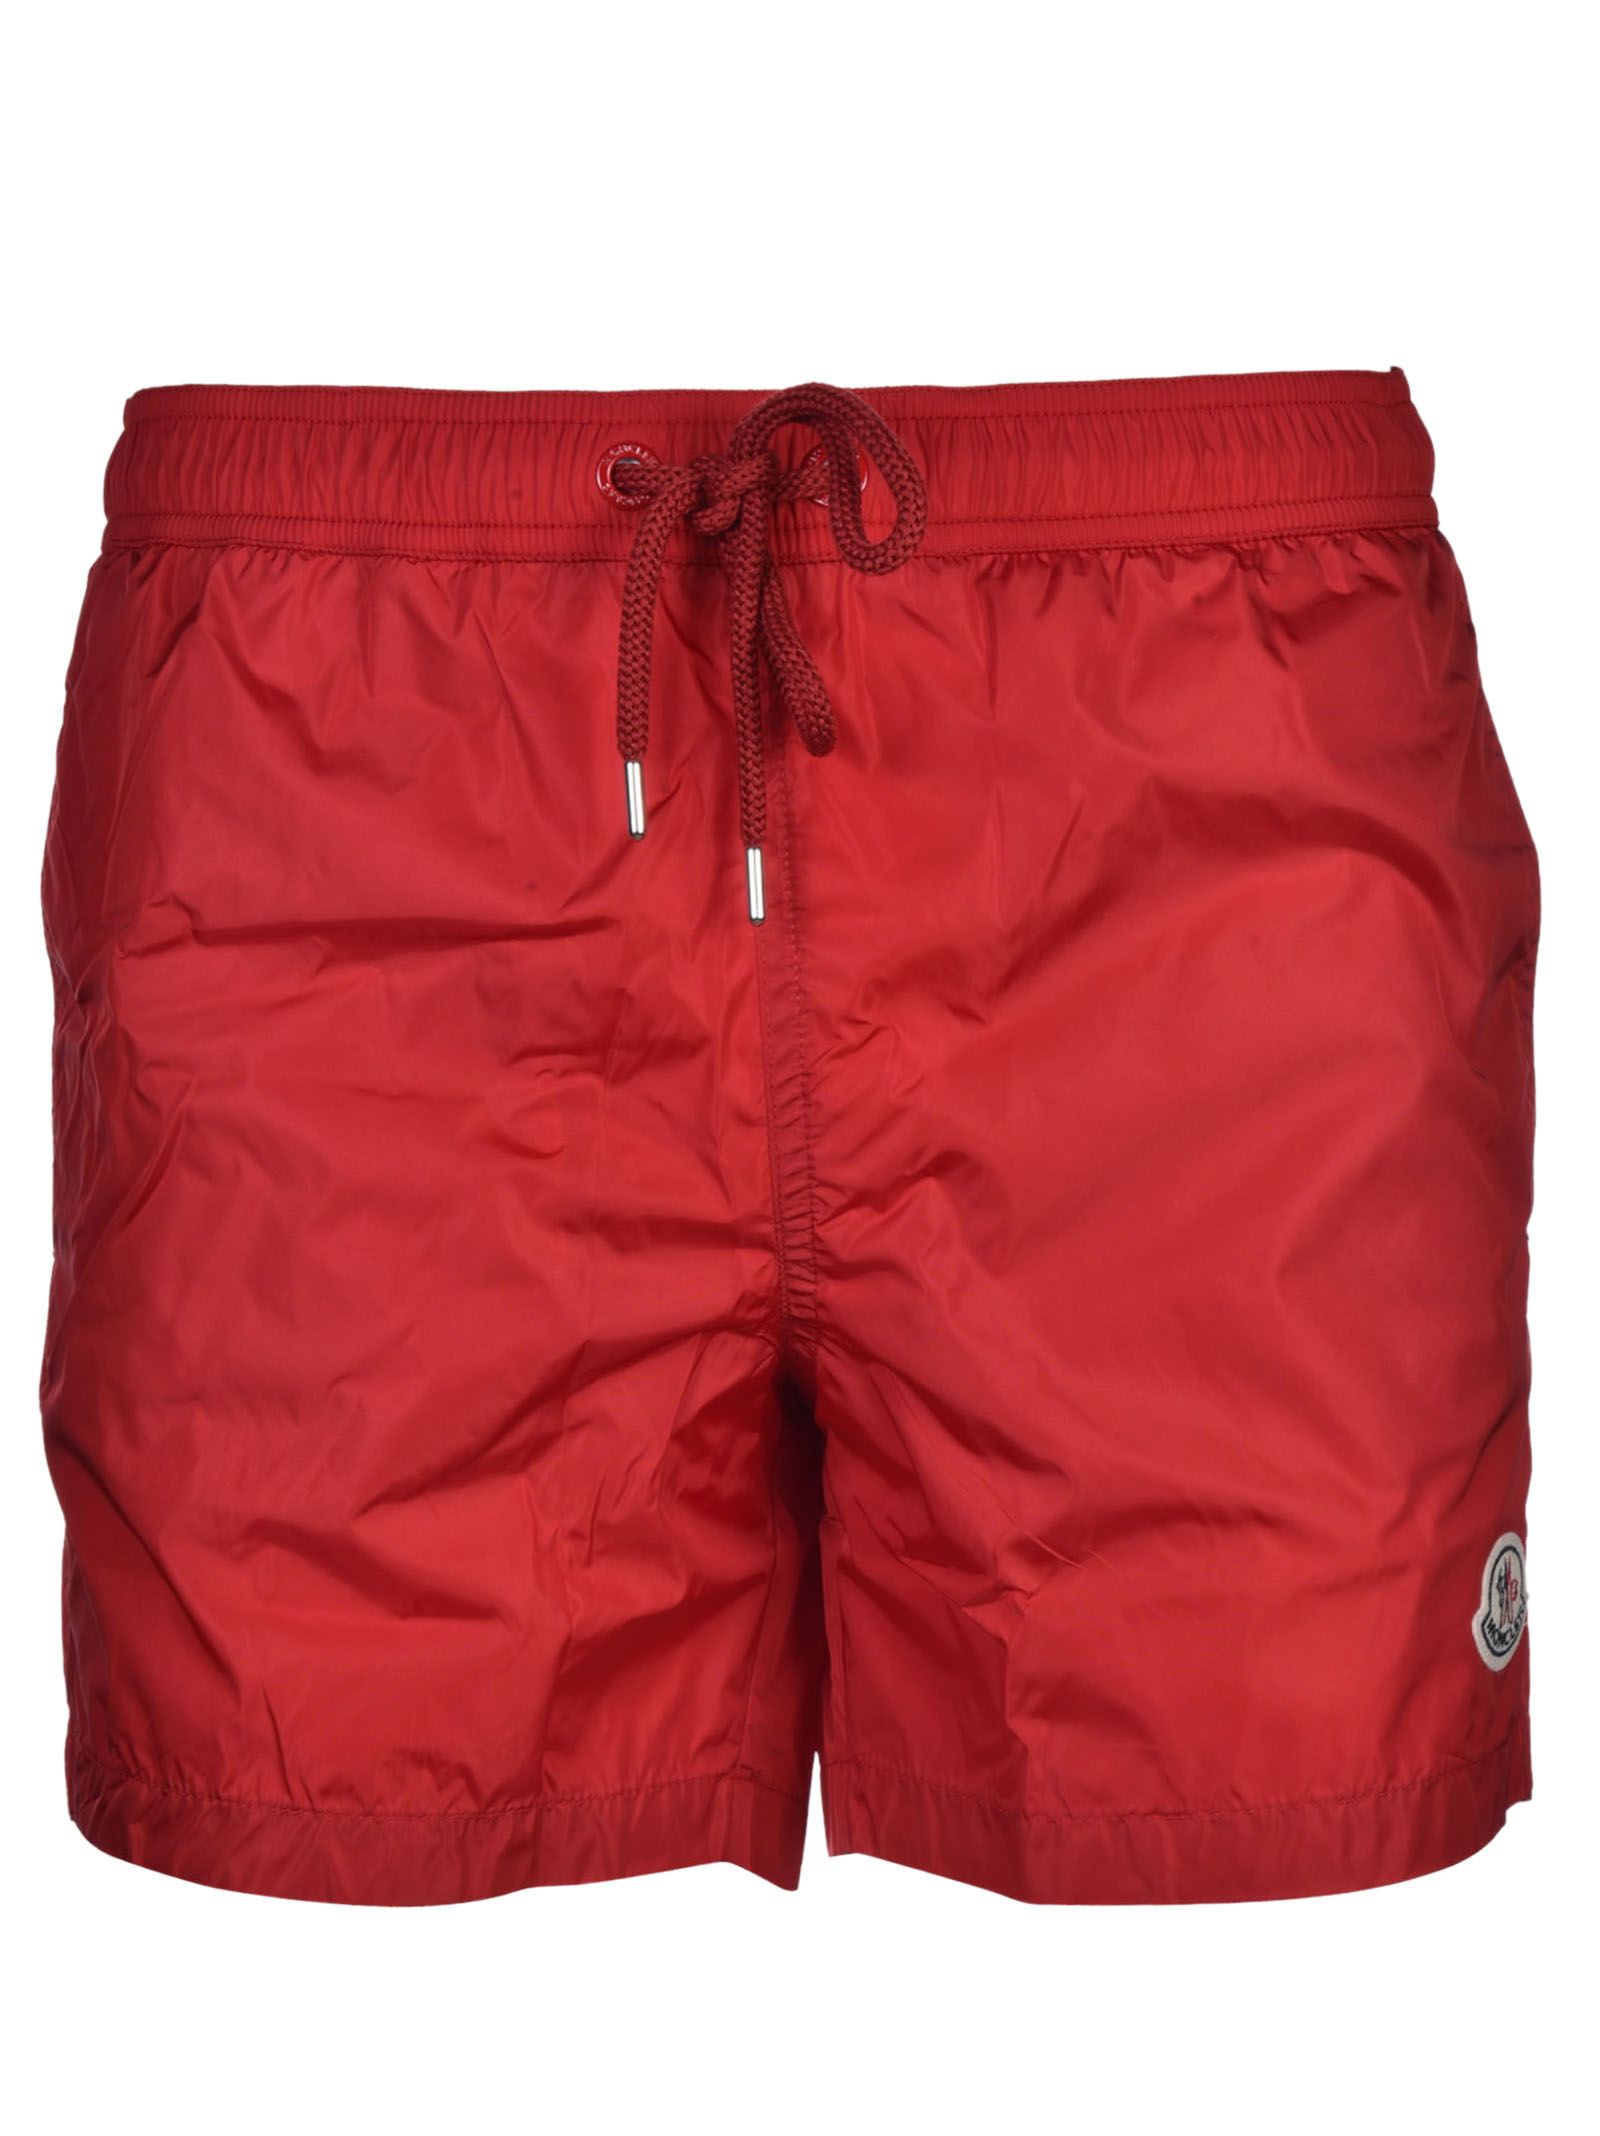 Moncler - Moncler Boxer Shorts - Red, Men's Bermudas | Italist